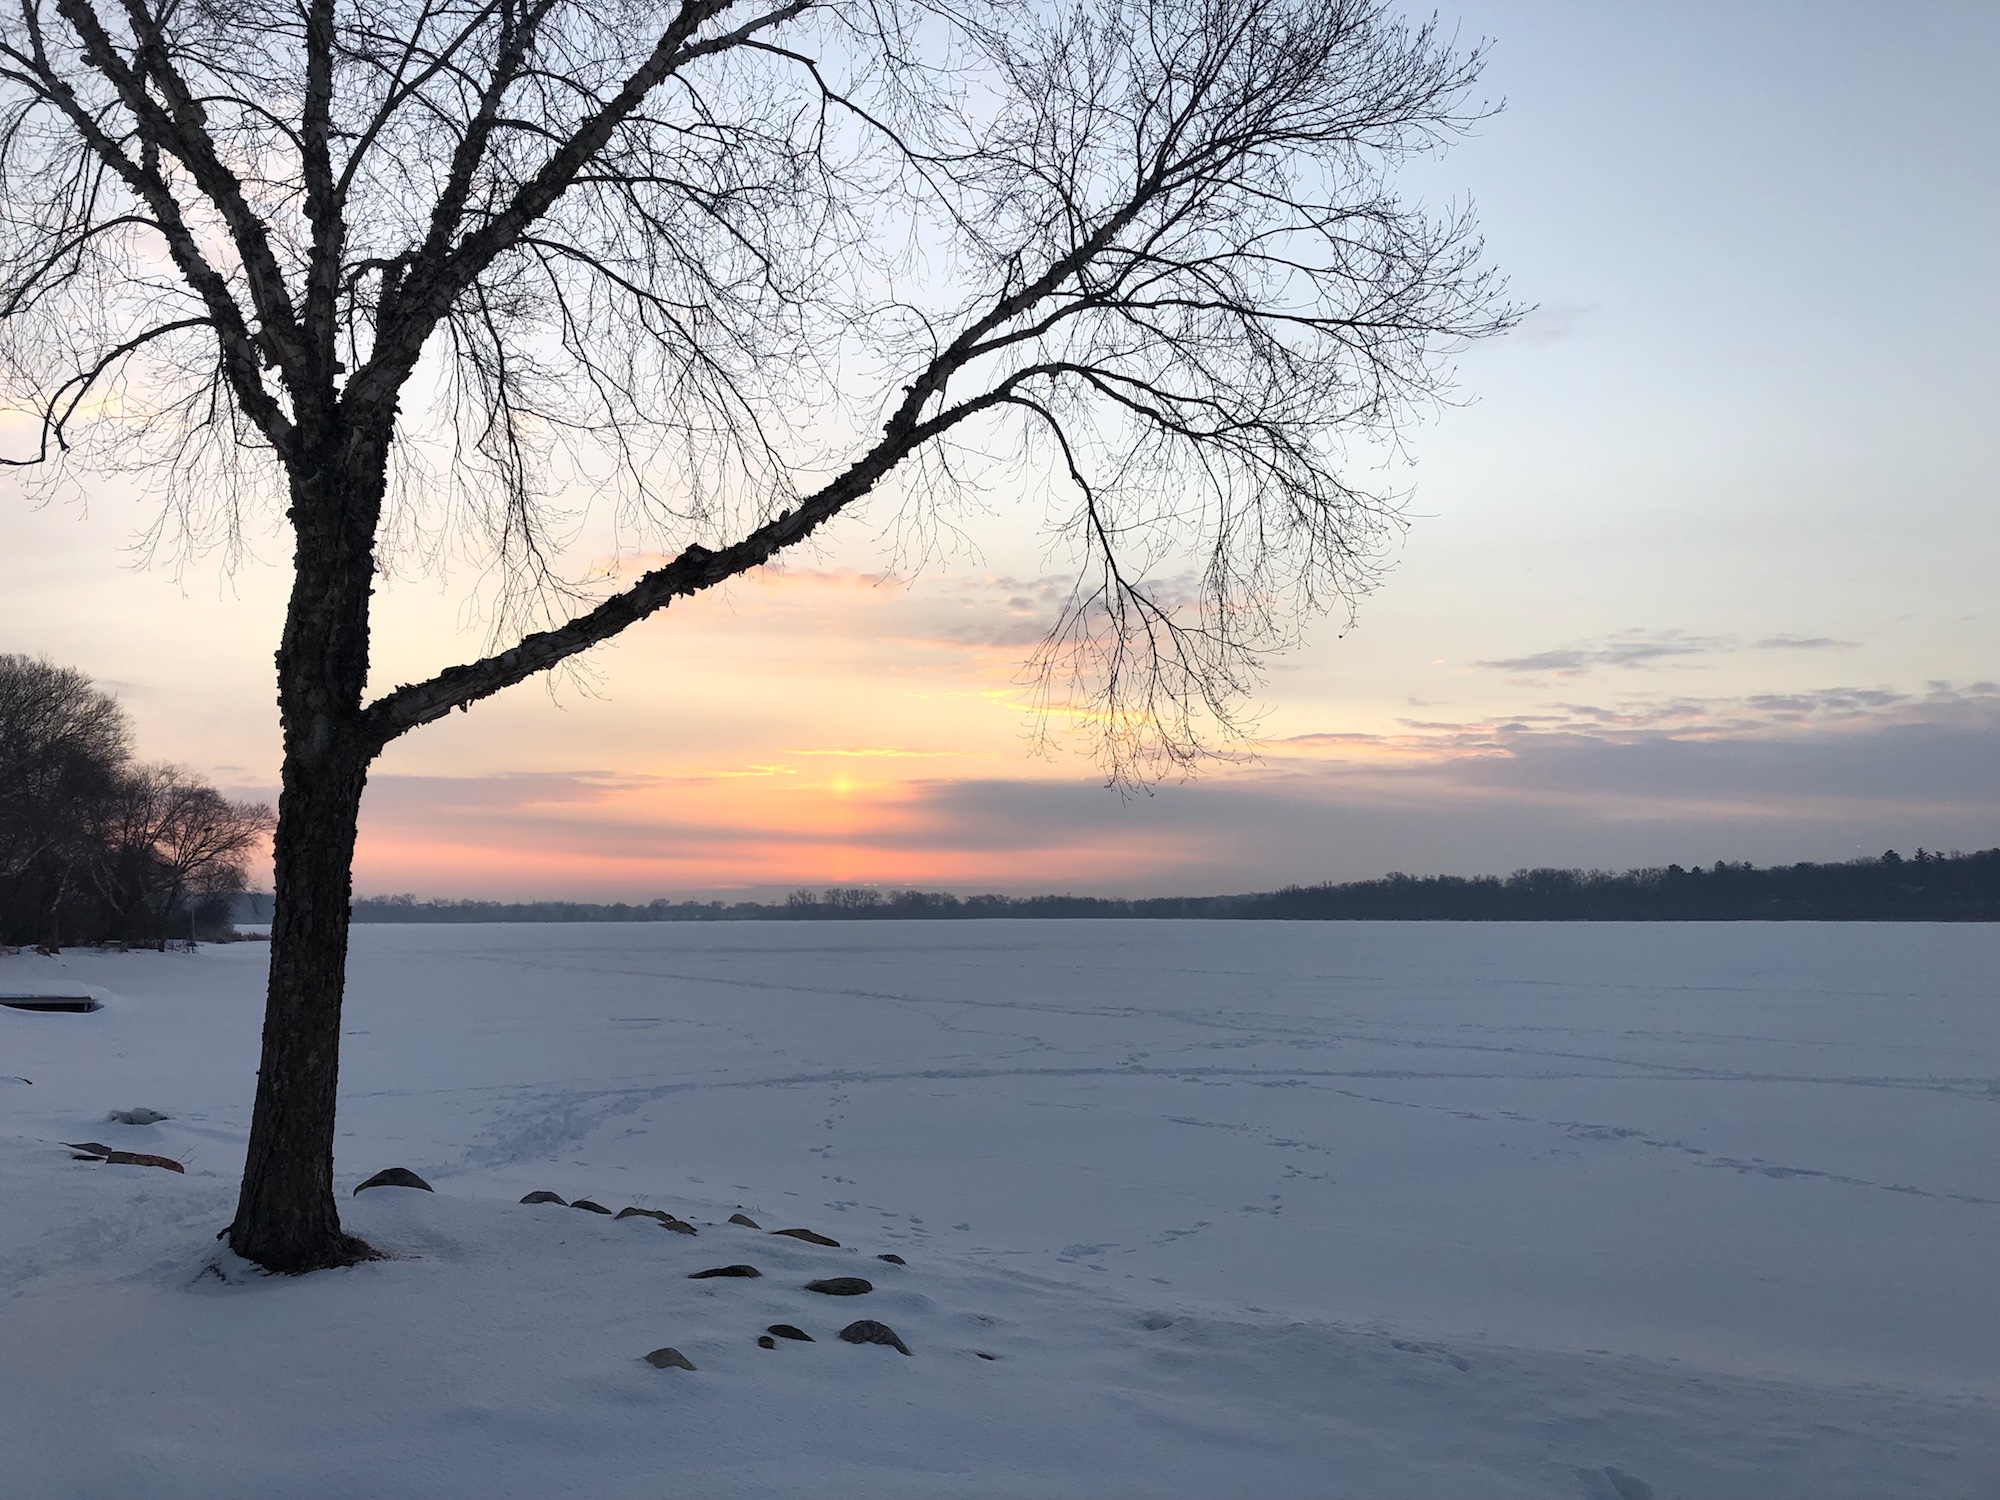 Lake Wingra on February 22, 2019.